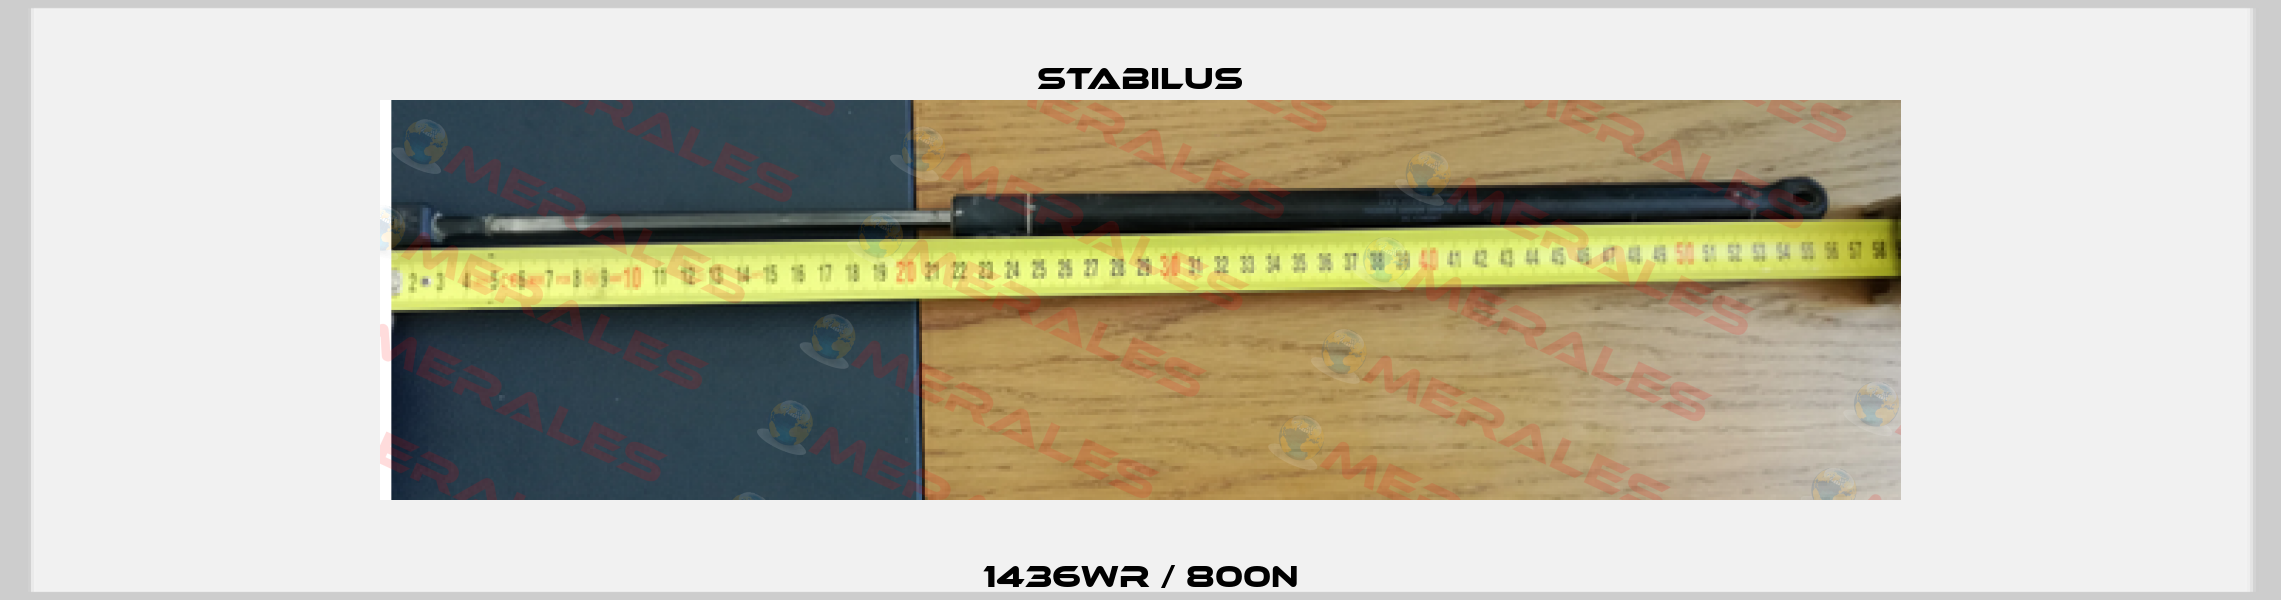 1436WR / 800N Stabilus